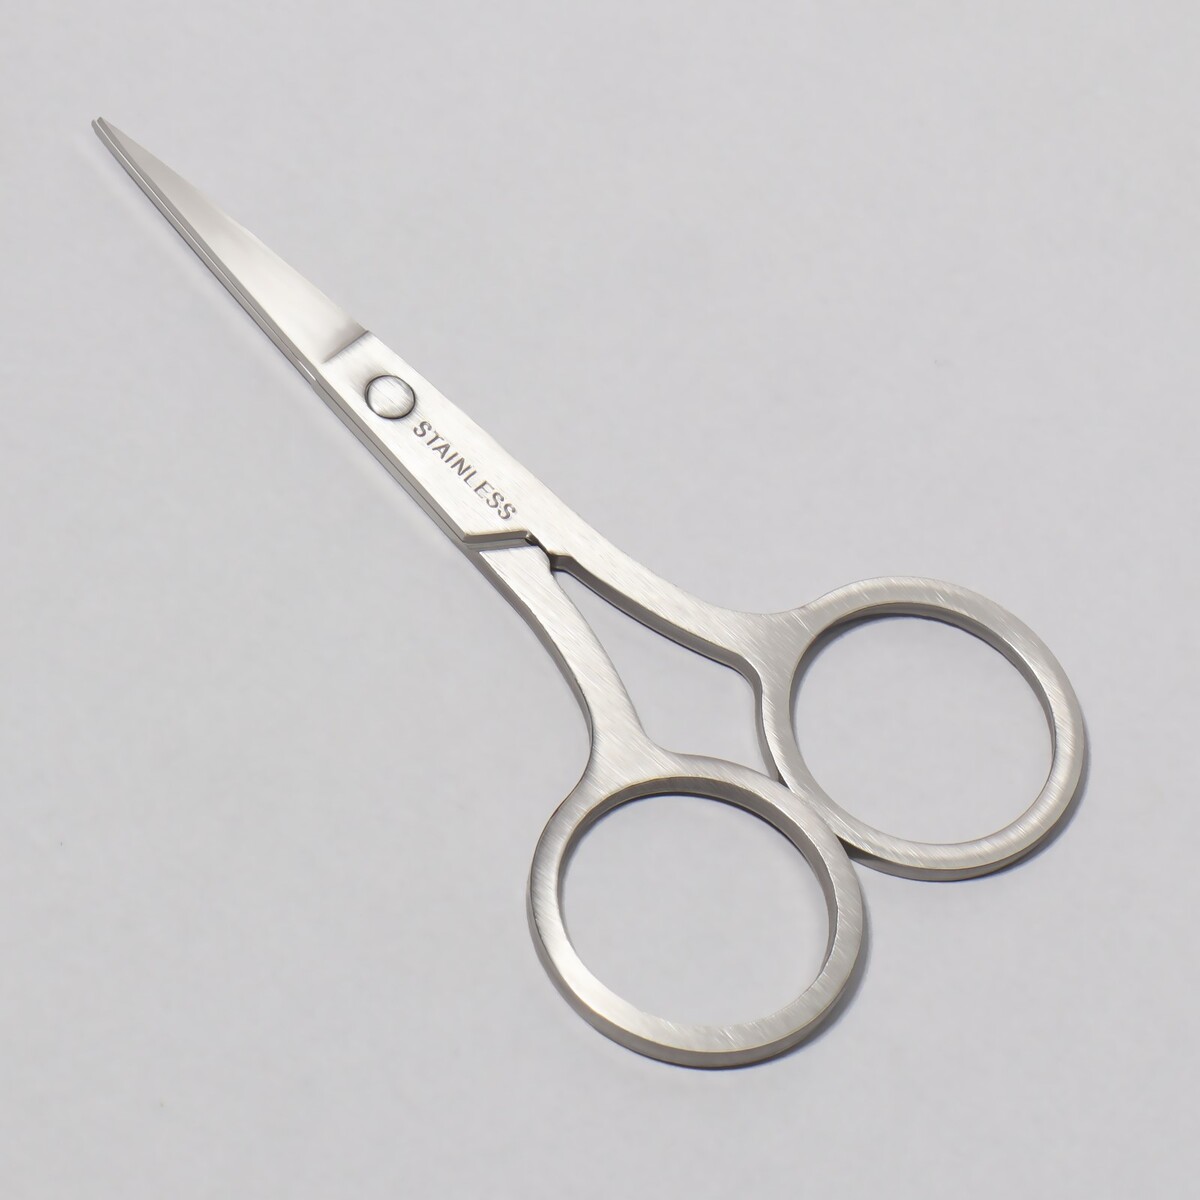 Ножницы маникюрные, прямые, 9 см, цвет серебристый пинцет в форме ножниц прорезиненные ручки 8 см на блистере серебристый